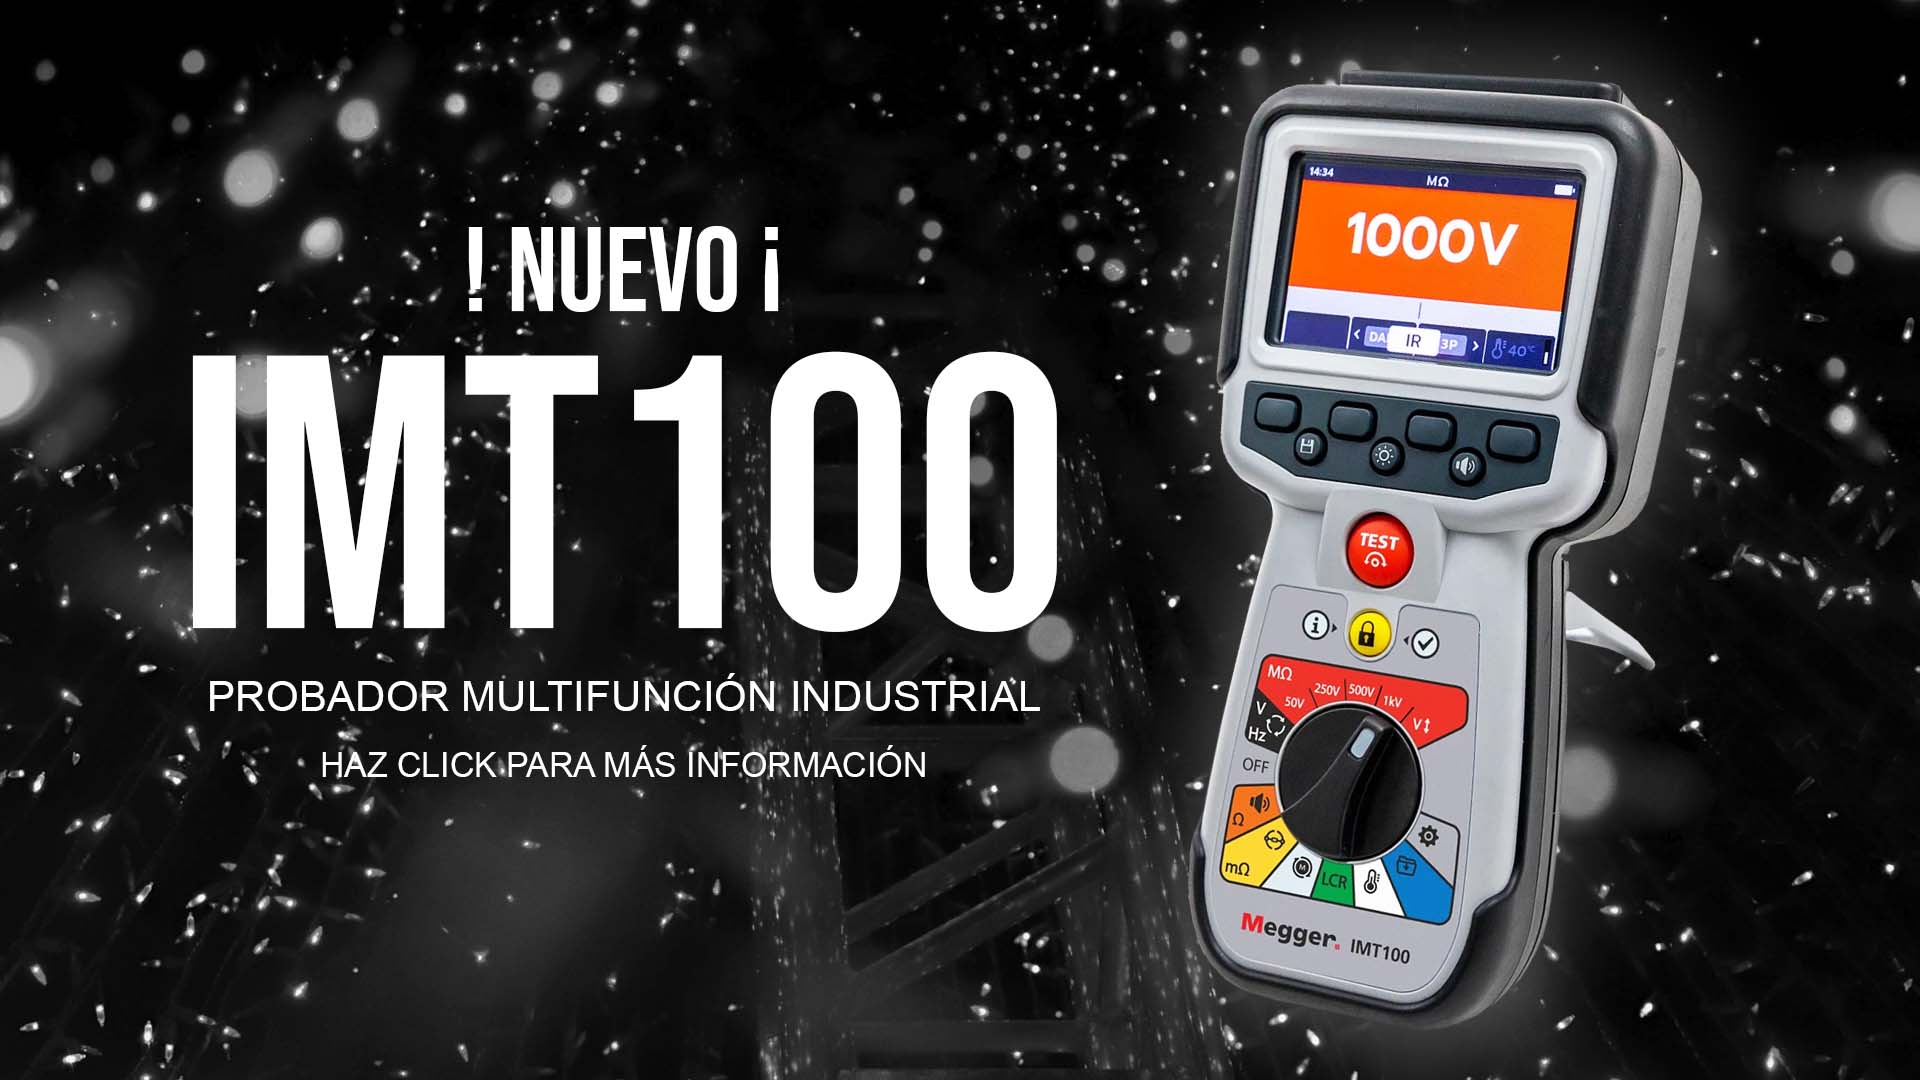 Probador multifuncion industrial IMT100